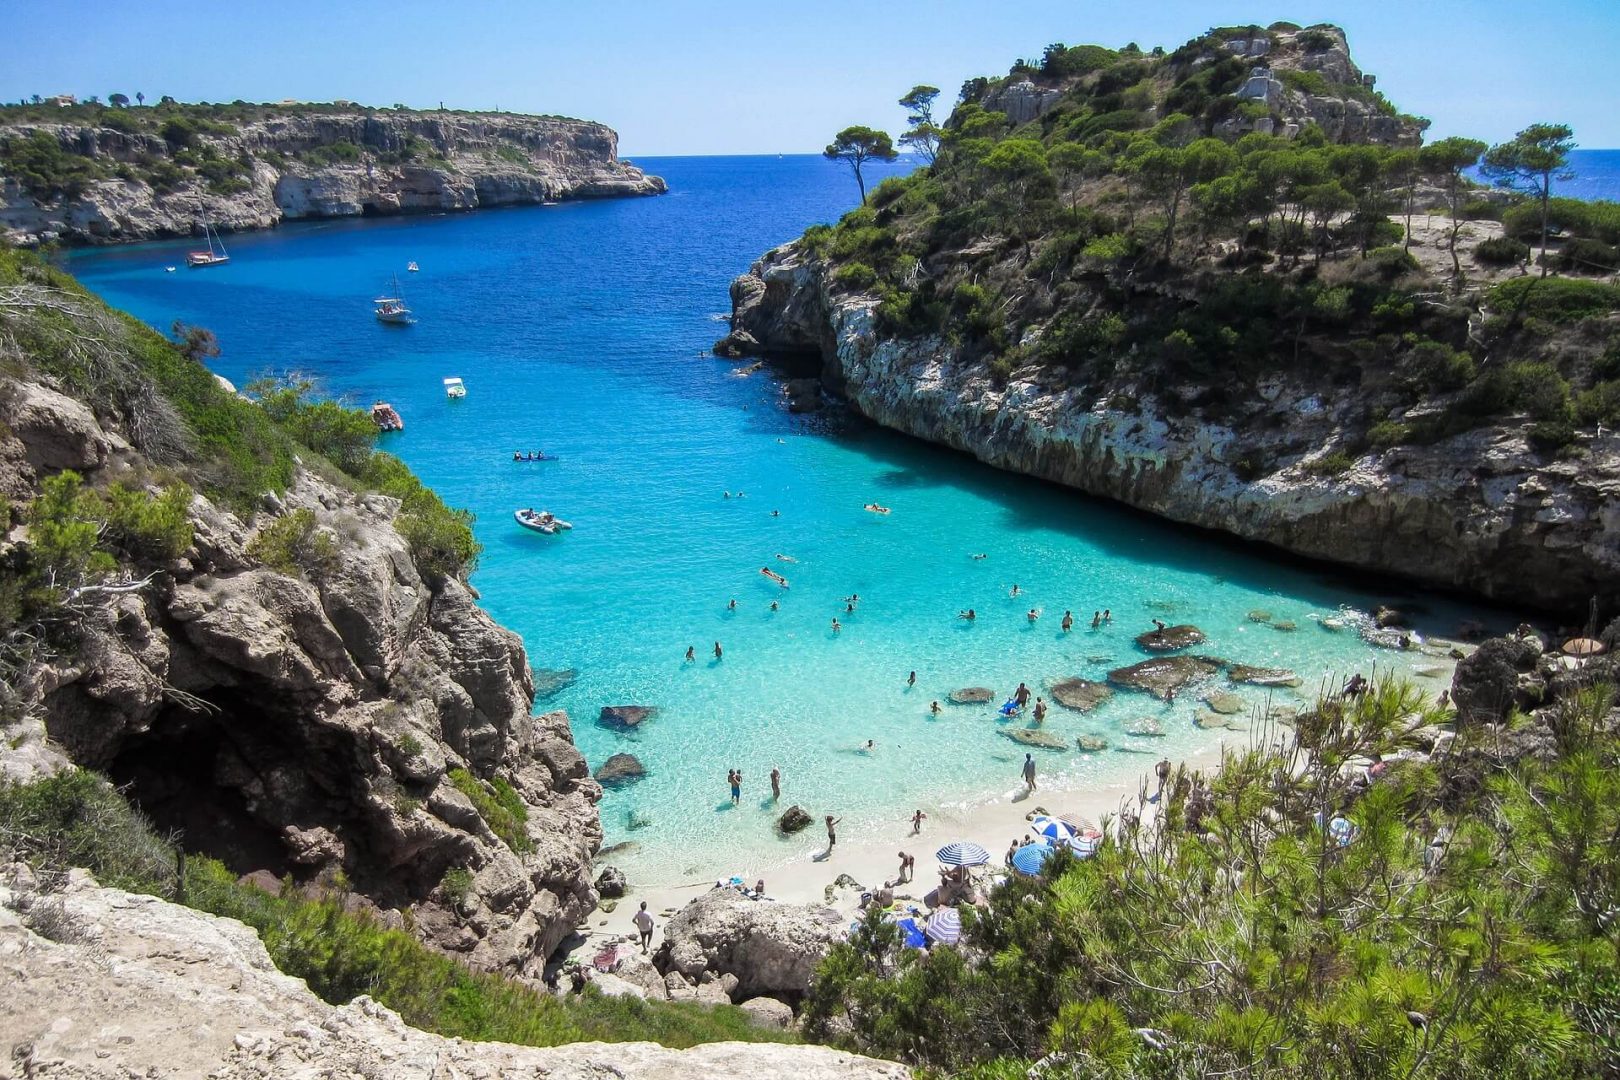 Una cala o bahía pequeña en la isla de Mallorca